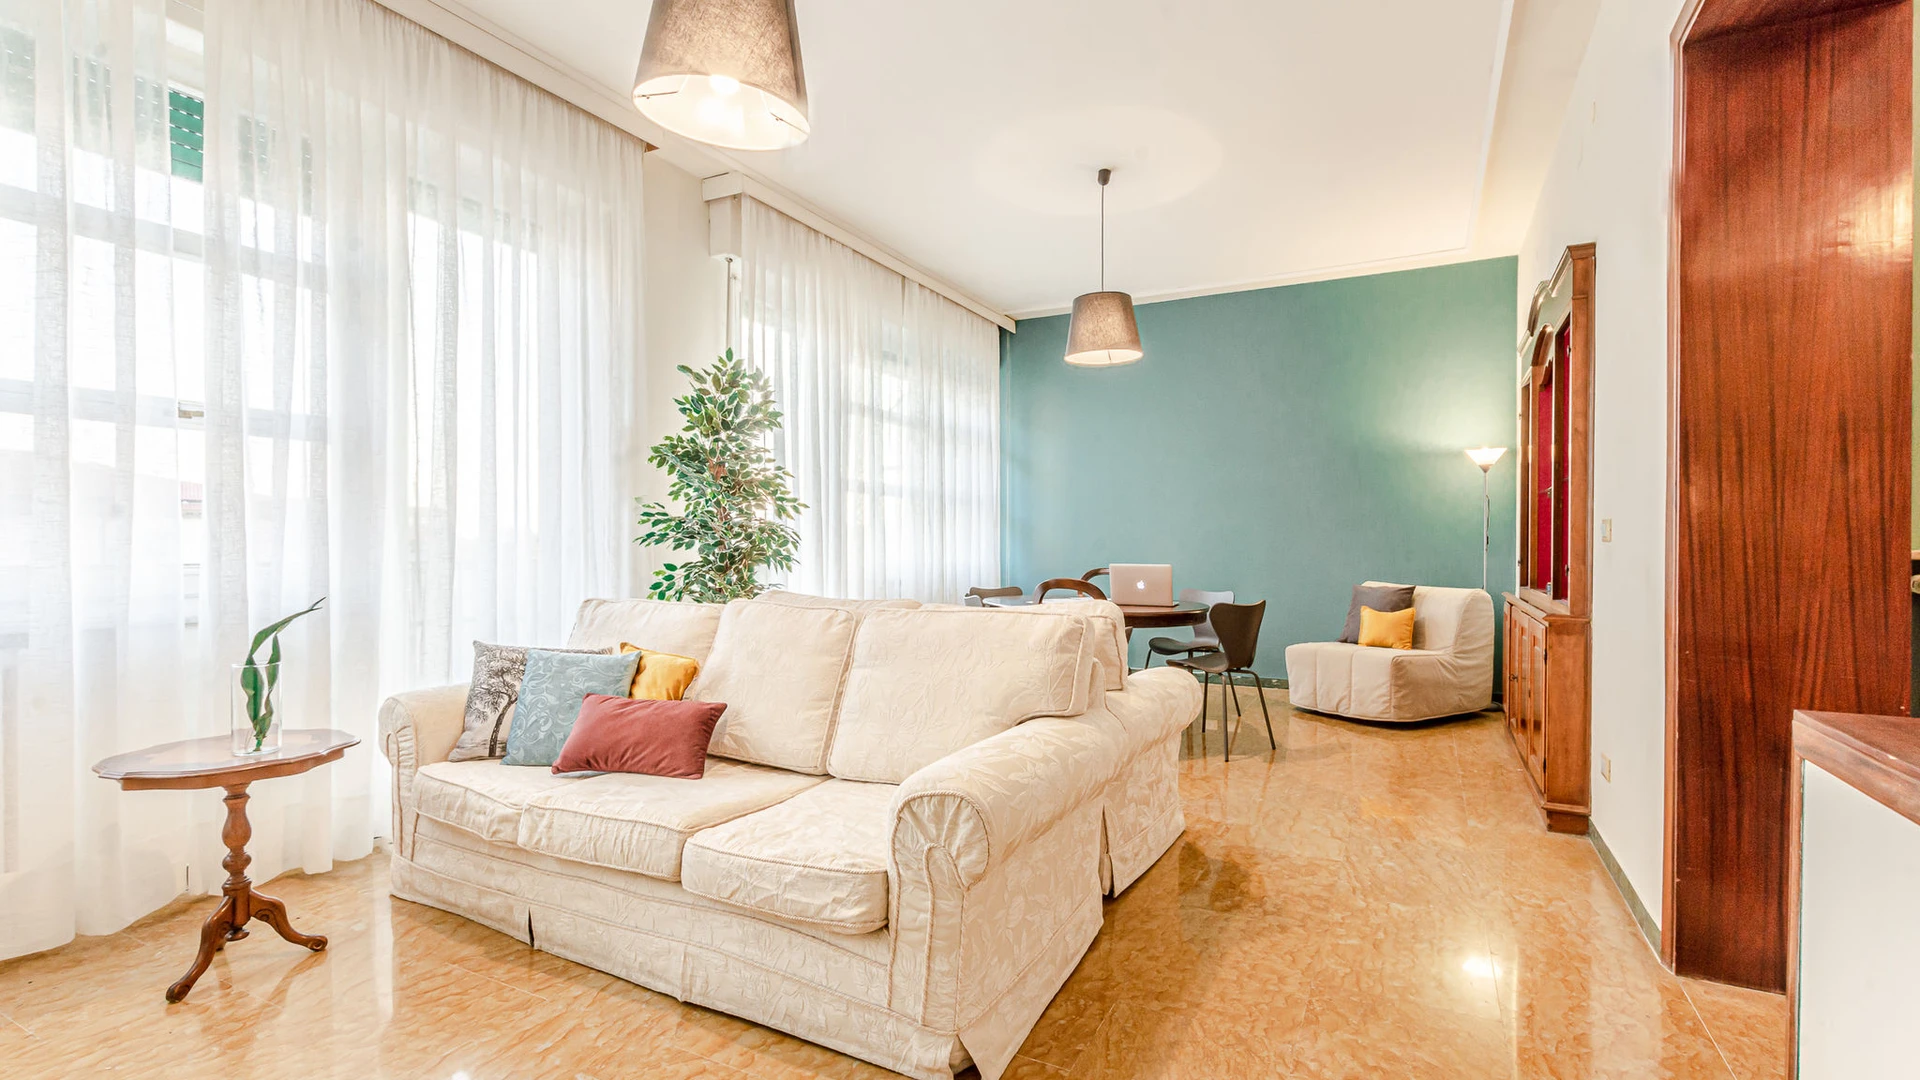 Apartamento moderno y luminoso en Livorno